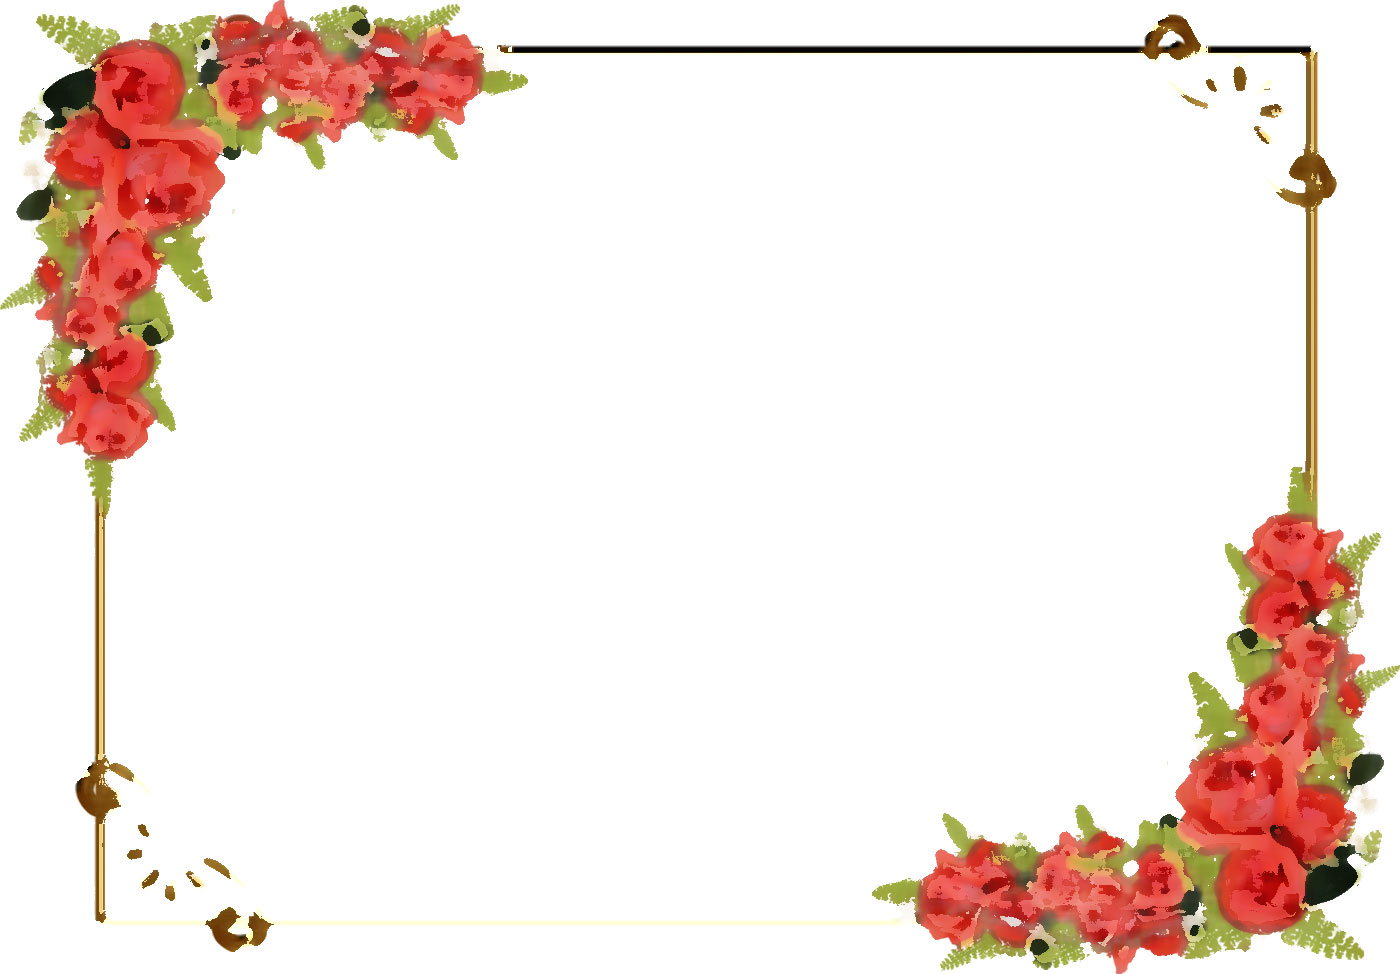 リアルな花のイラスト フリー素材 フレーム枠no 1244 赤バラ 葉